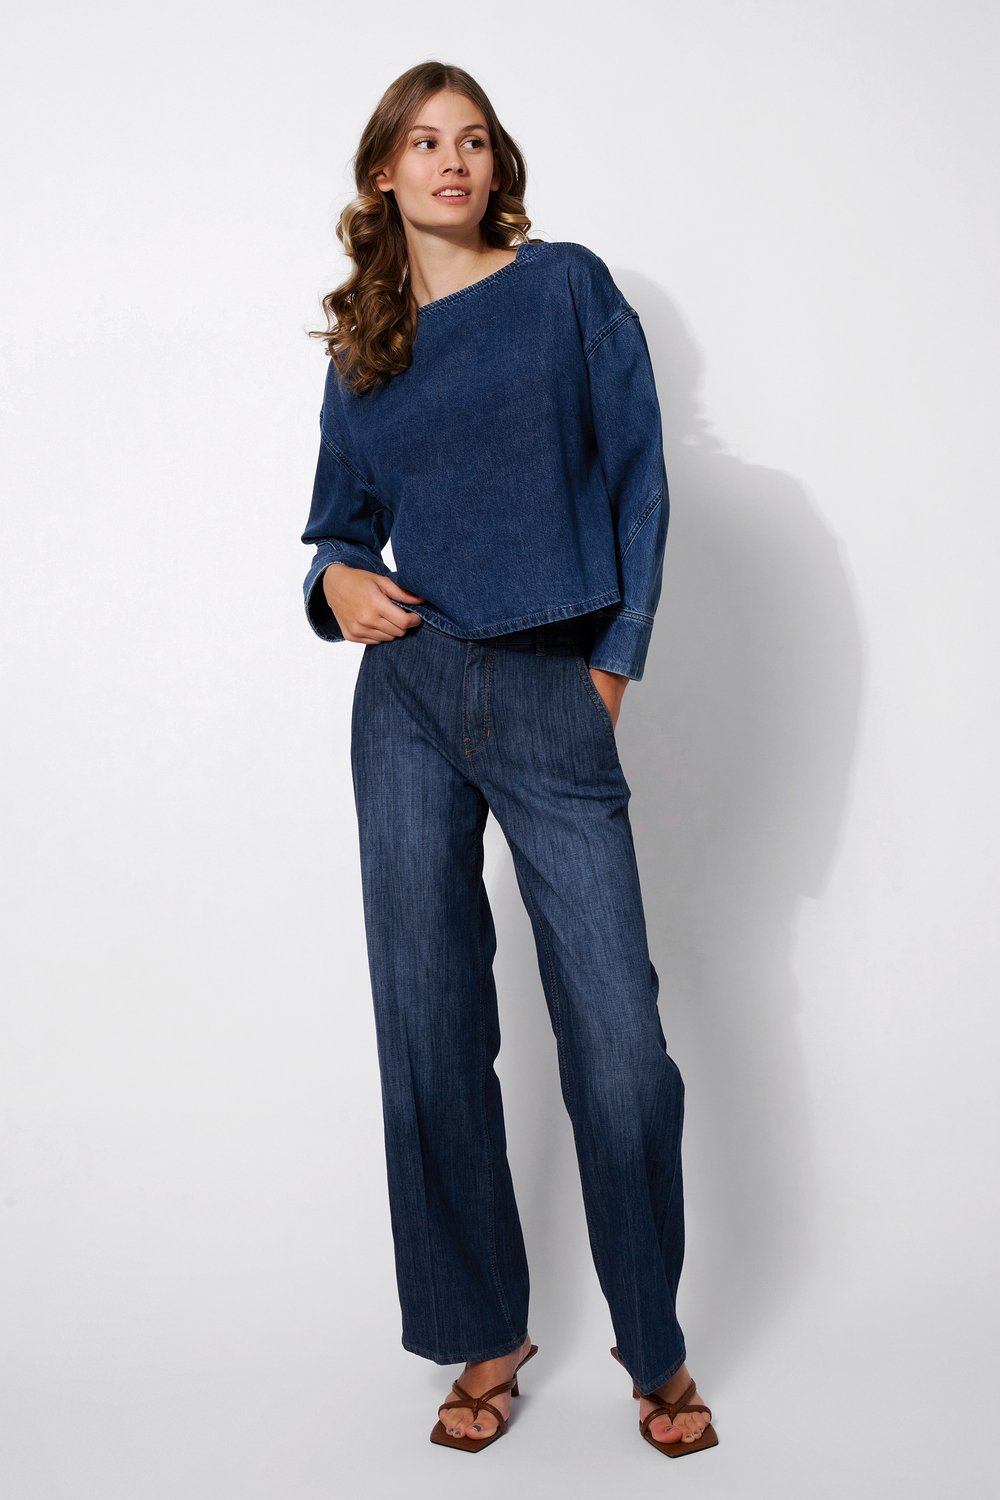 Light wide leg jeans | Style »Audrey1_085« mid blue